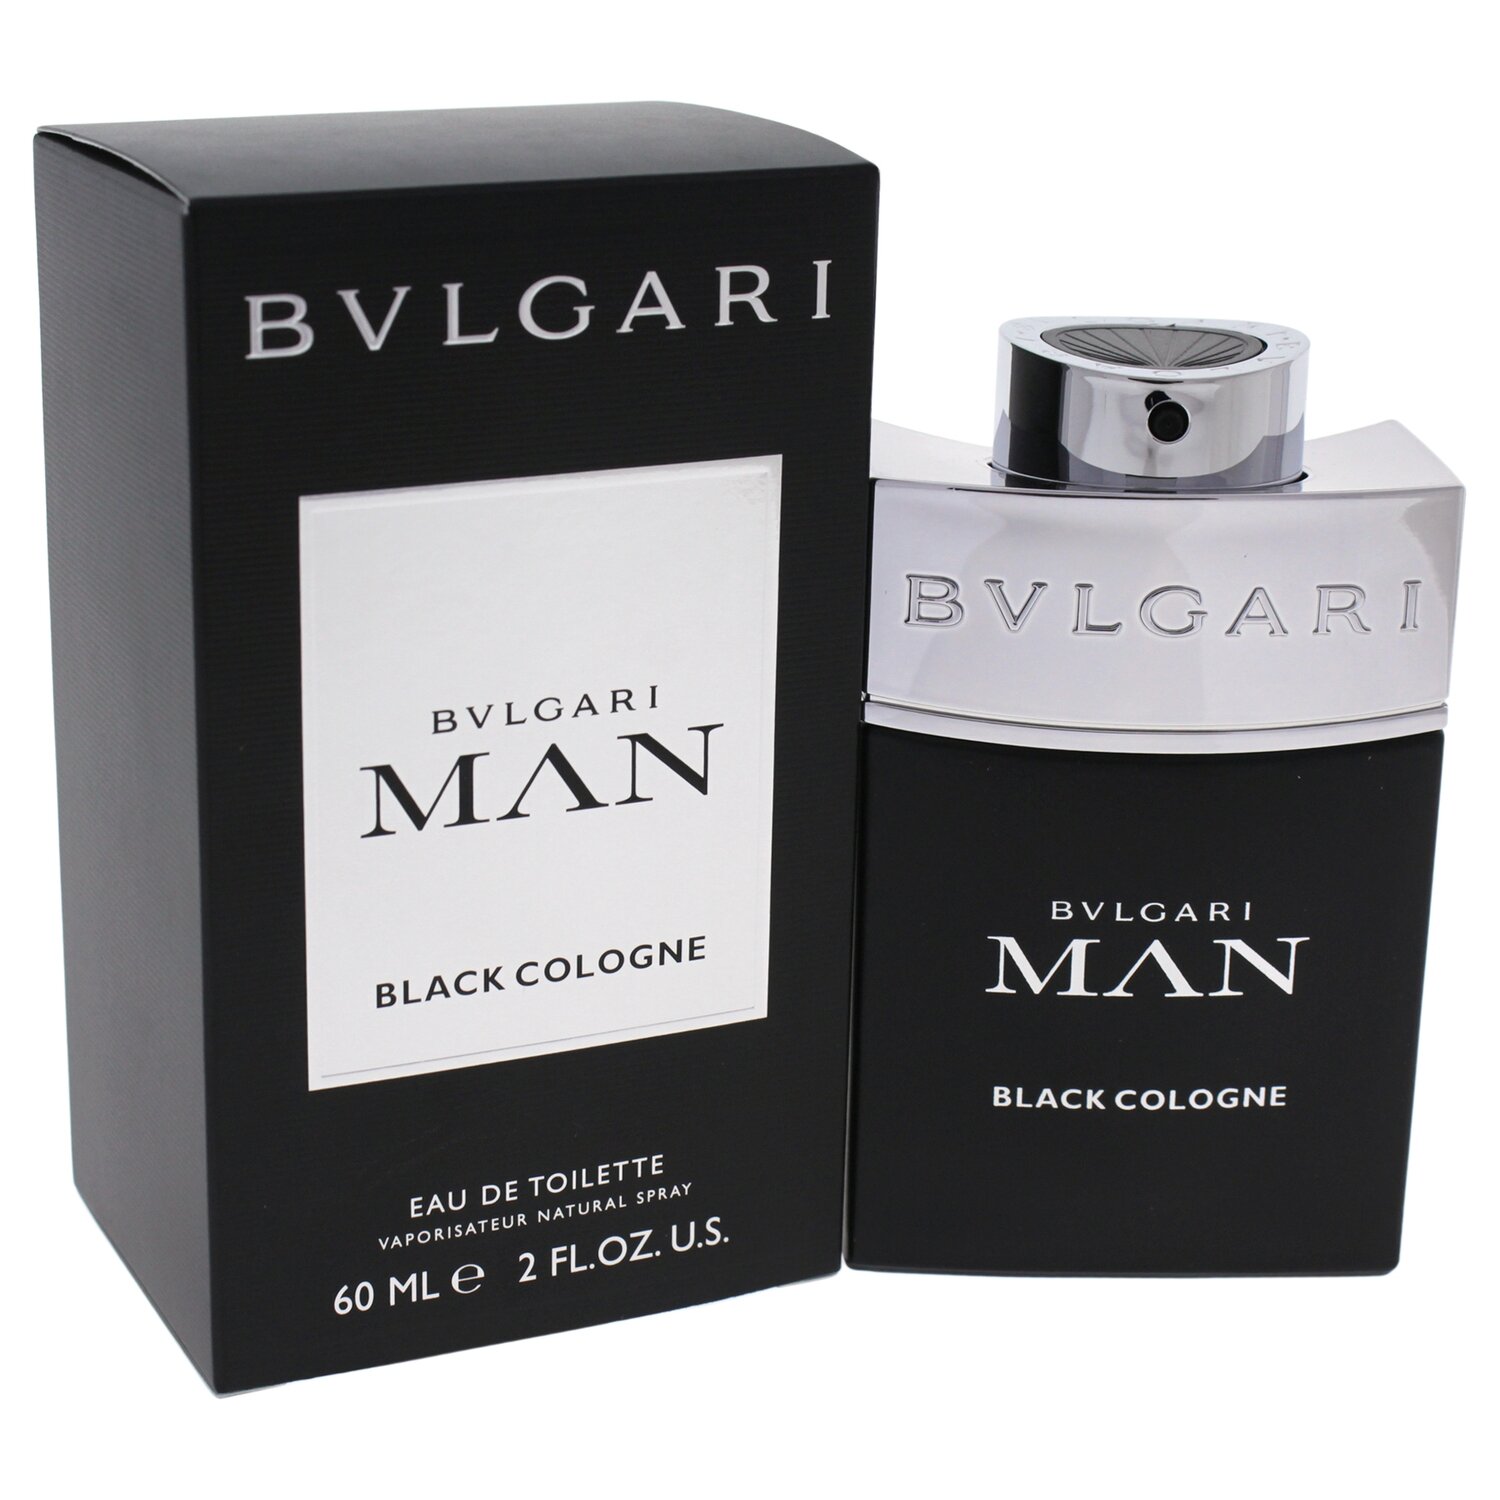 BVLGARI BLACK COLOGNE FOR MAN EDT 60 ML